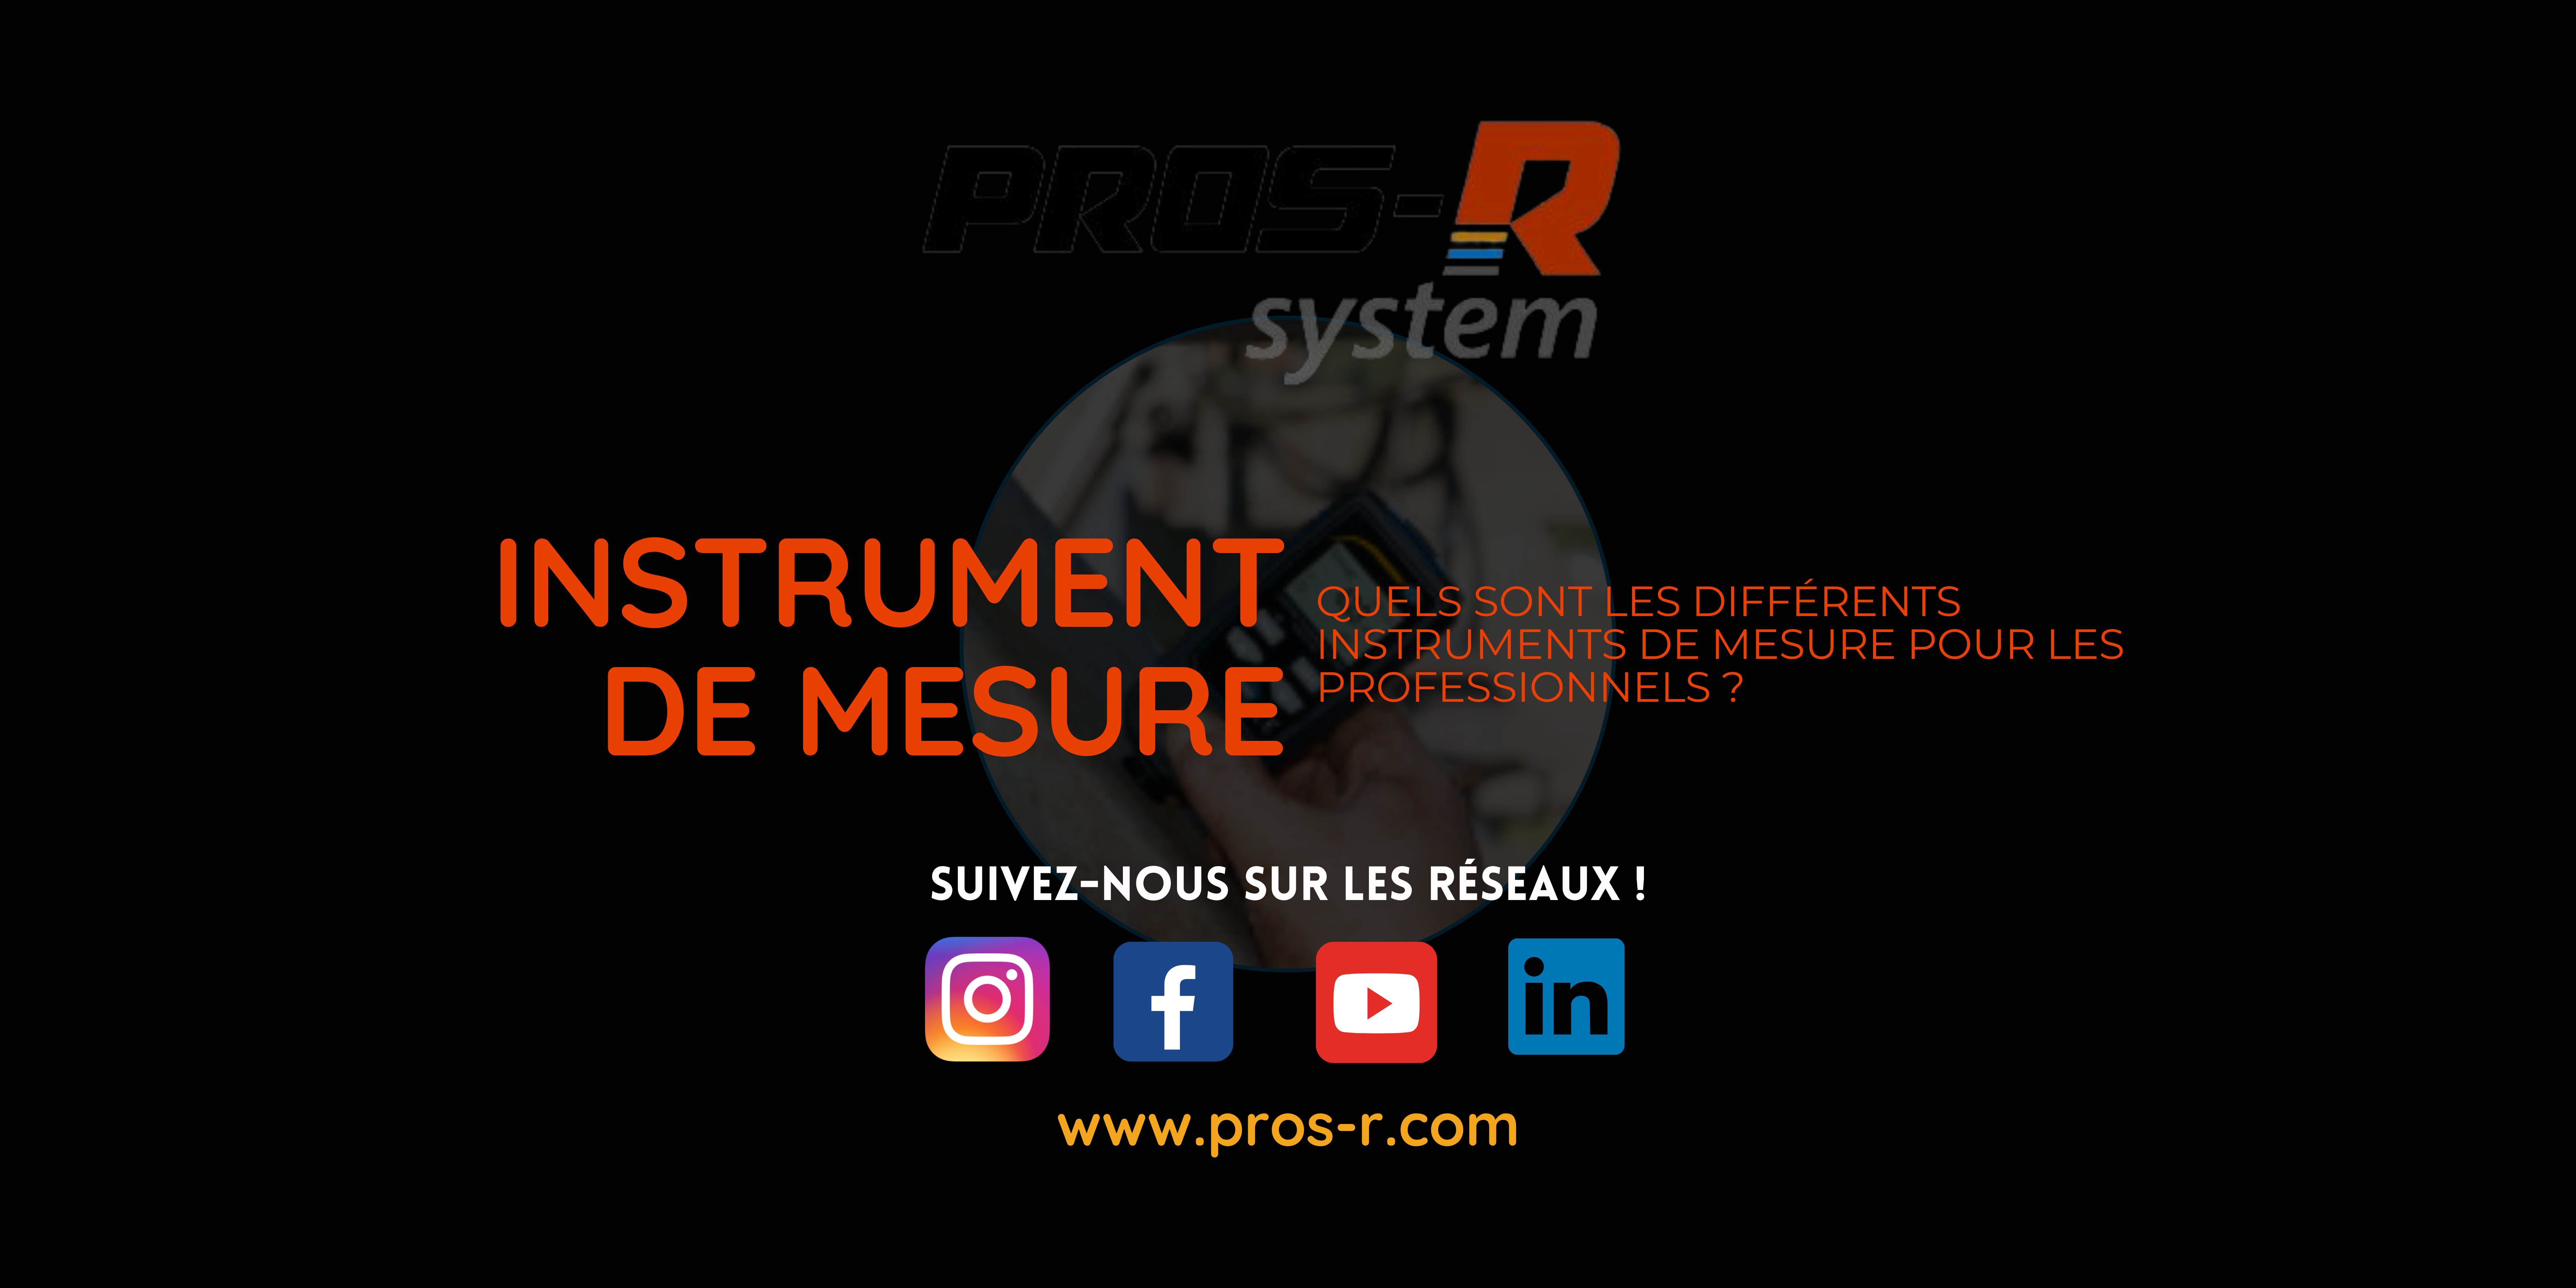 Quels sont les différents instruments de mesure pour les professionnels ? PROS-R System